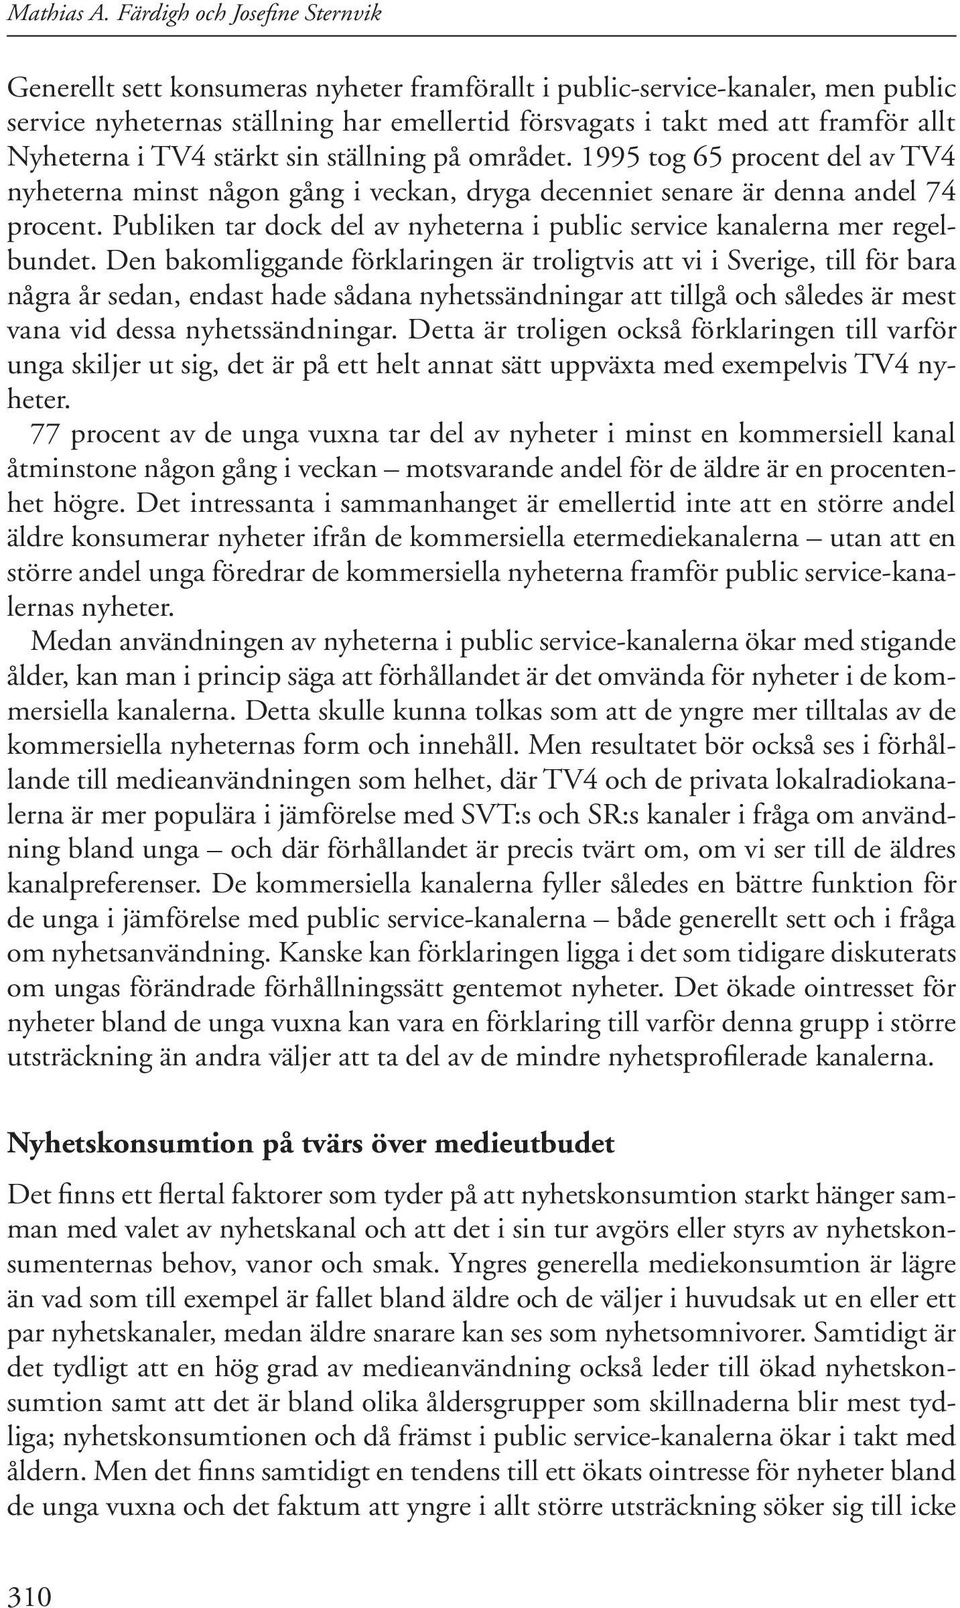 Nyheterna i TV4 stärkt sin ställning på området. 1995 tog 65 procent del av TV4 nyheterna minst någon gång i veckan, dryga decenniet senare är denna andel 74 procent.